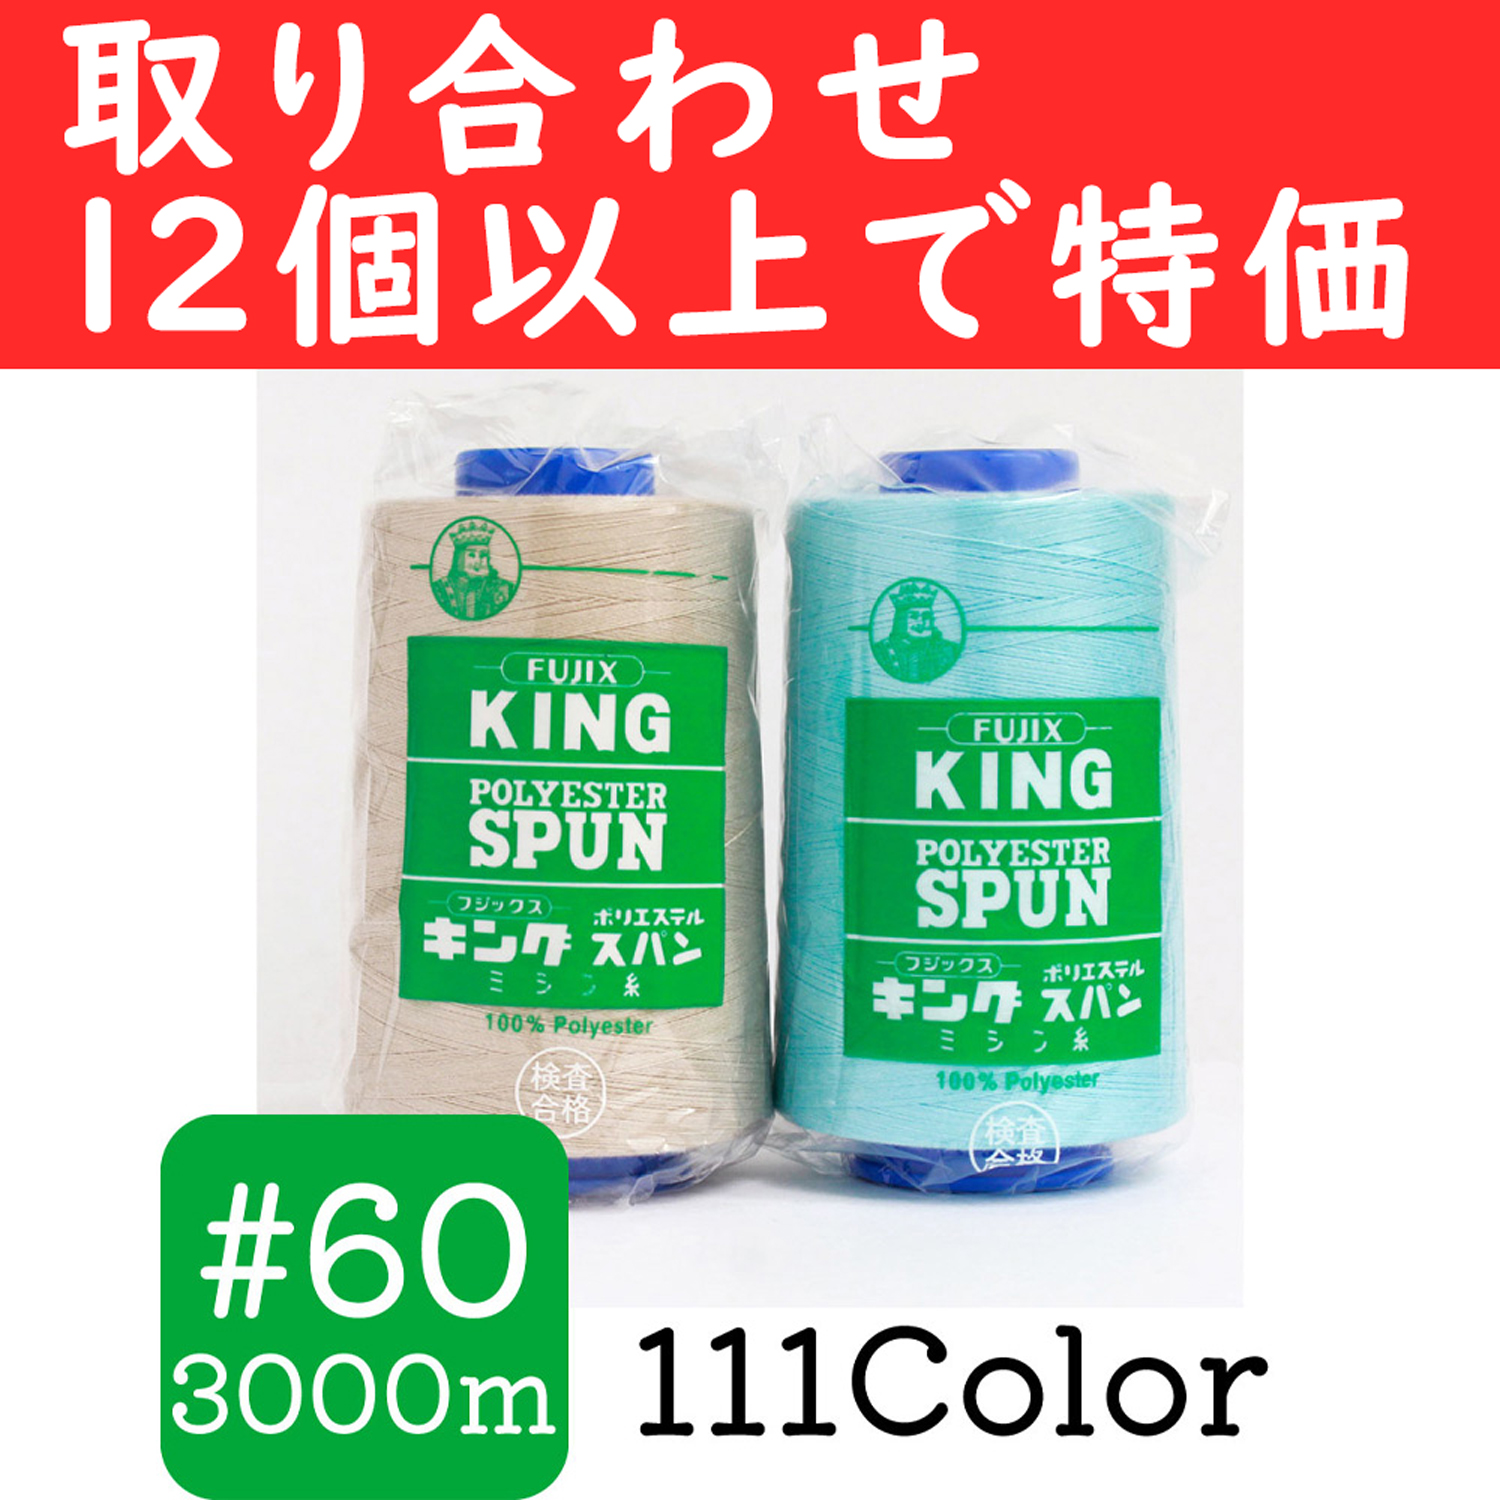 KING60-OVER12 【特価】フジックス キングポリエステルスパン 60番 3000m巻 12個以上購入で特価 (個)